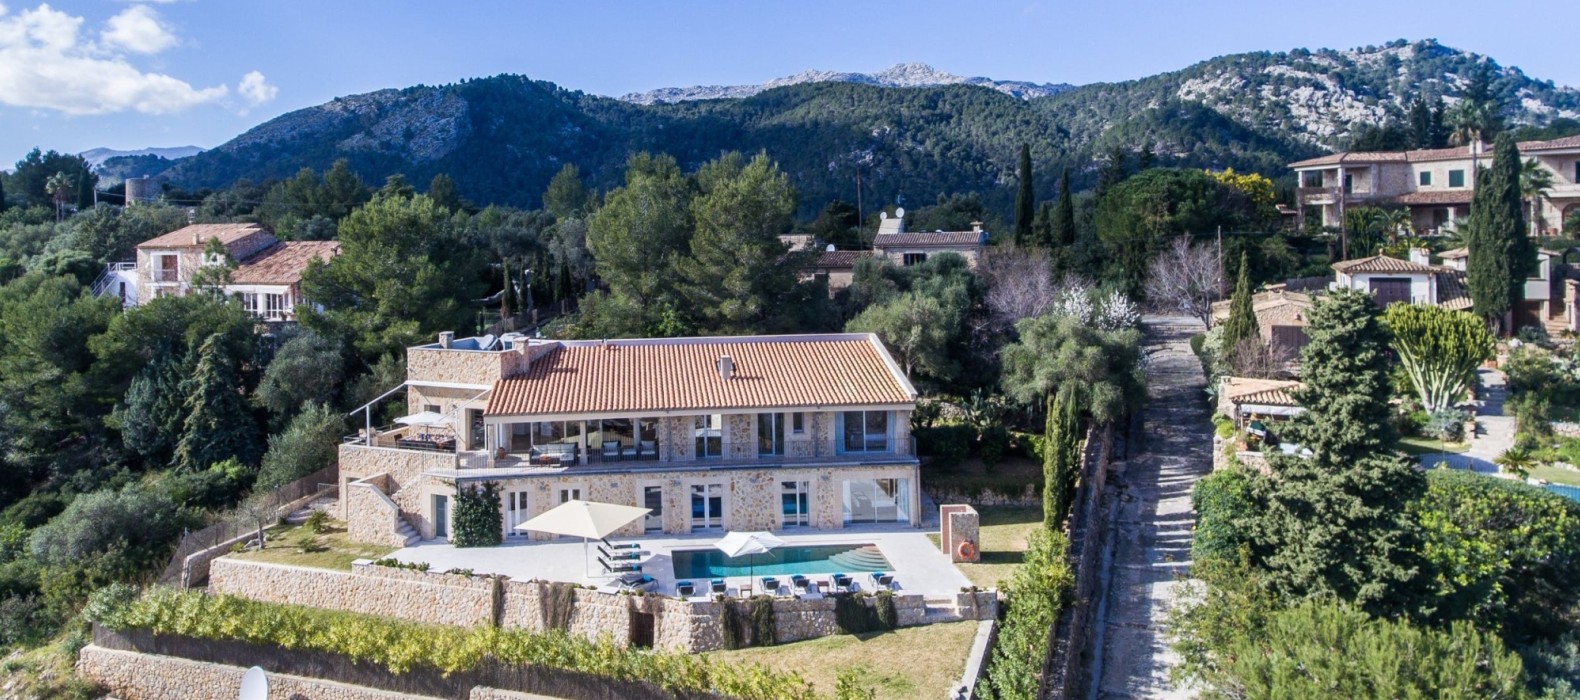 Exterior villa view  of Casa Dulce Vista in Mallorca